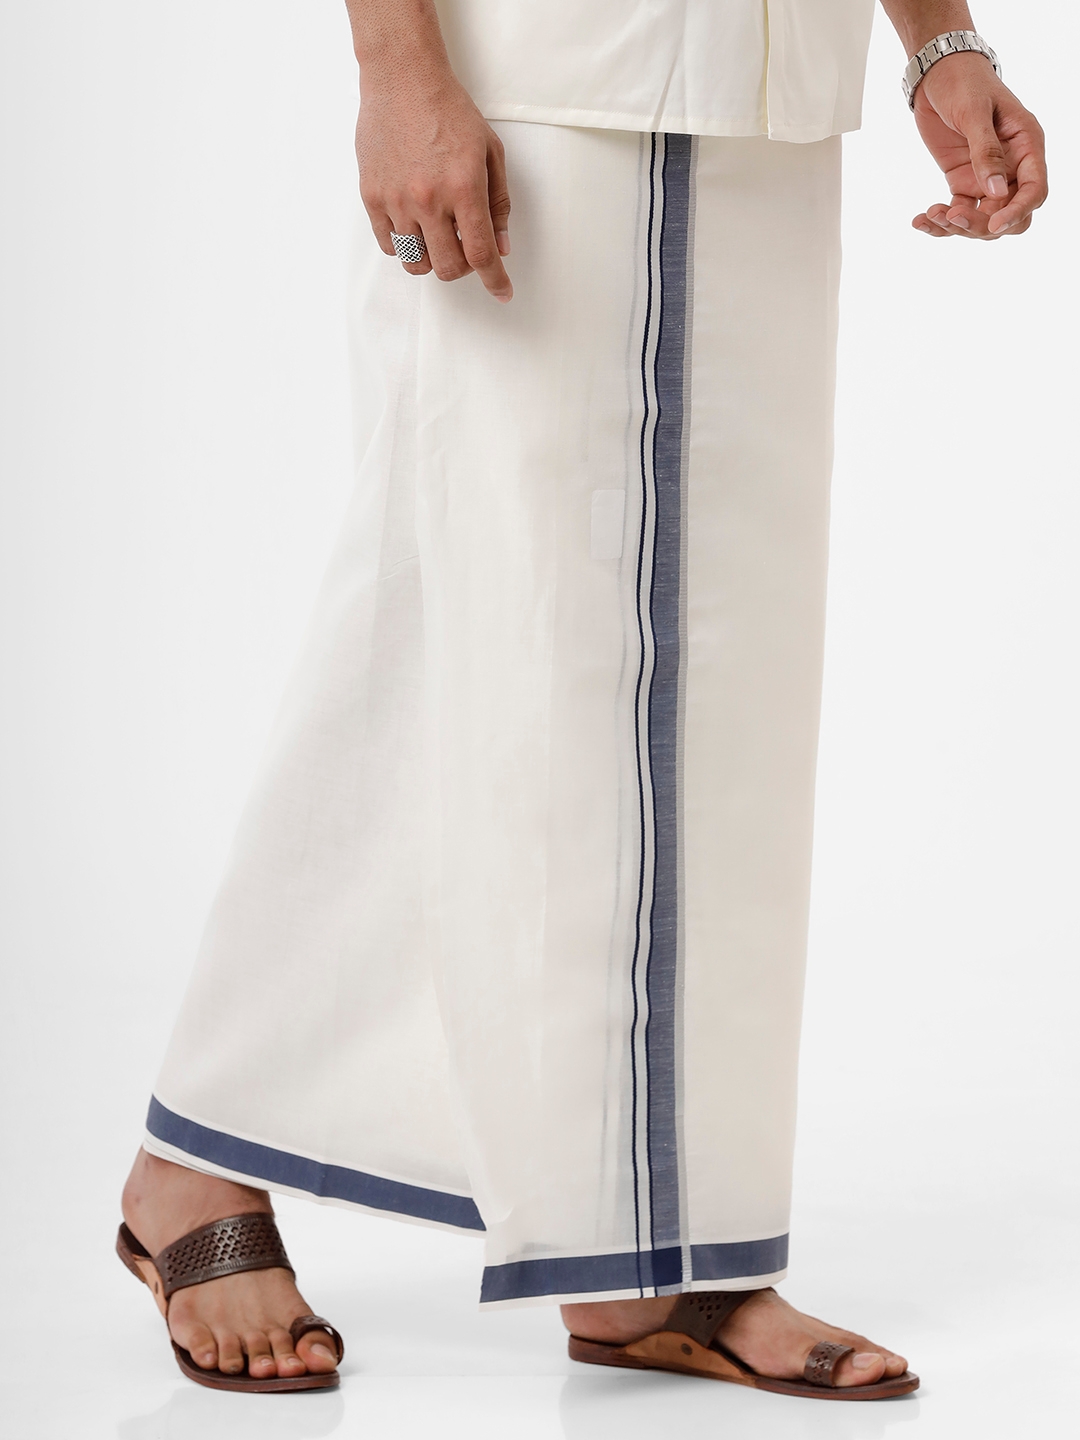 Ramraj Cotton  Buy Ramraj Cotton Brand Clothing Online in India Myntra